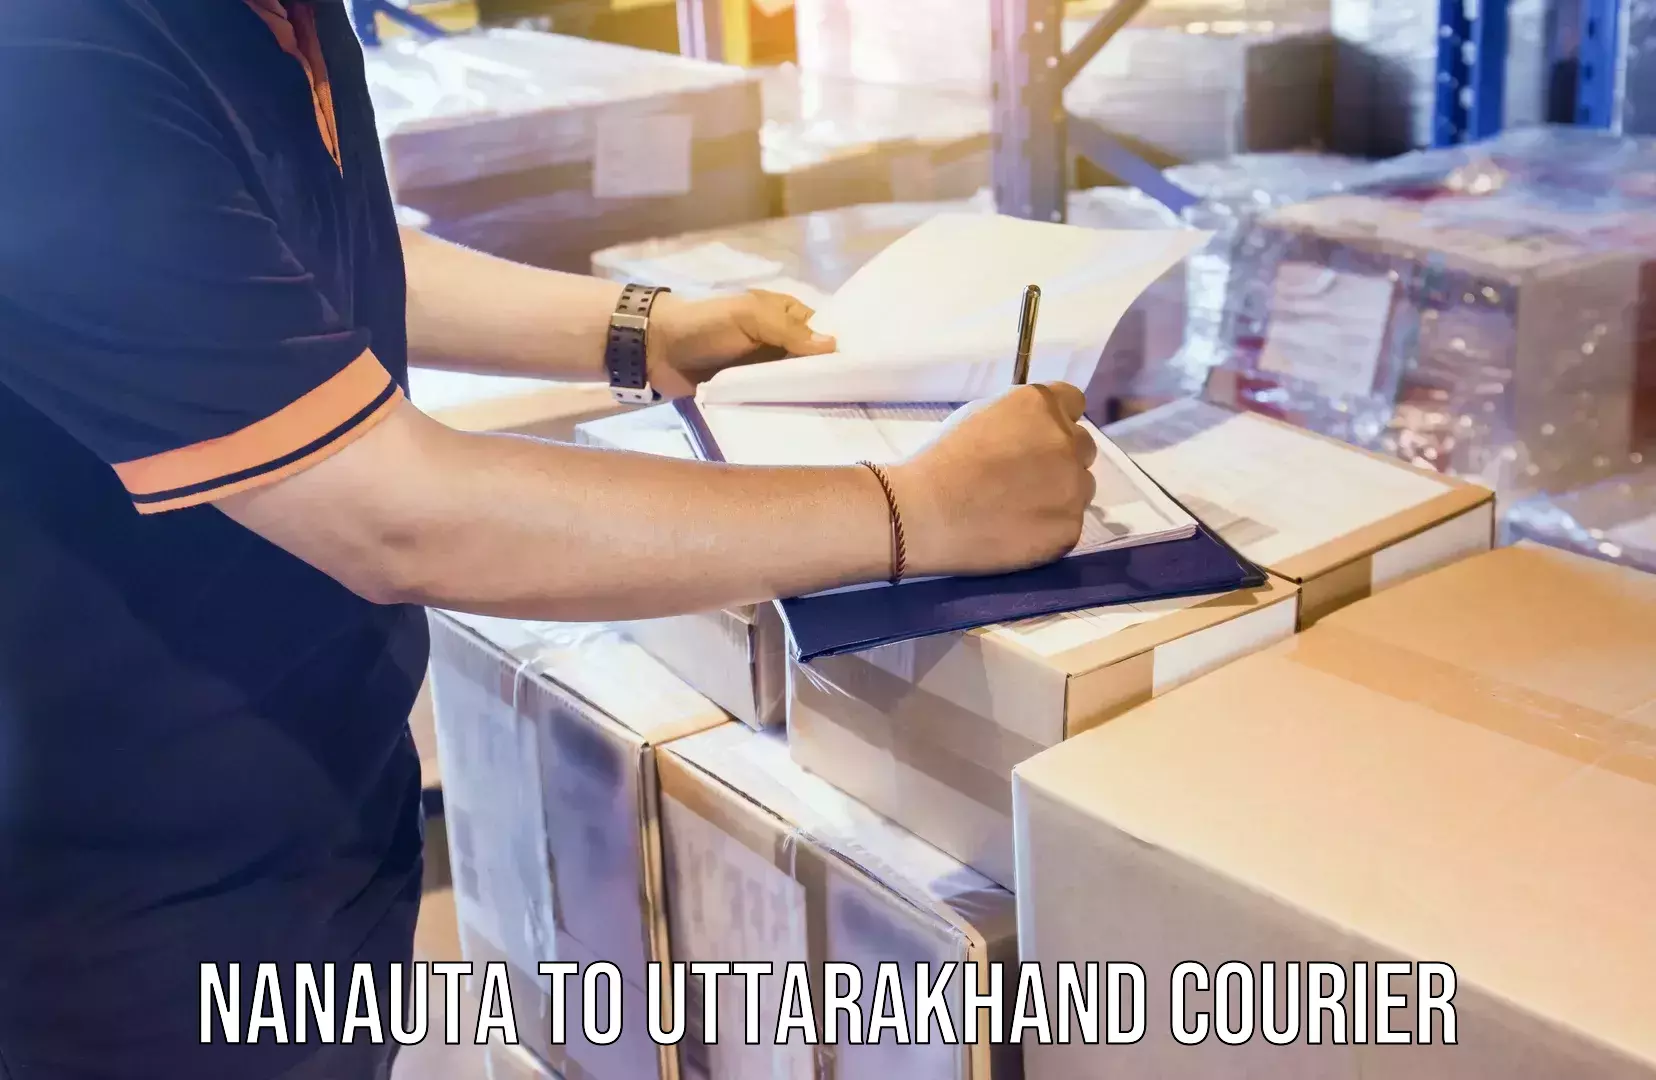 Efficient moving company Nanauta to Uttarakhand